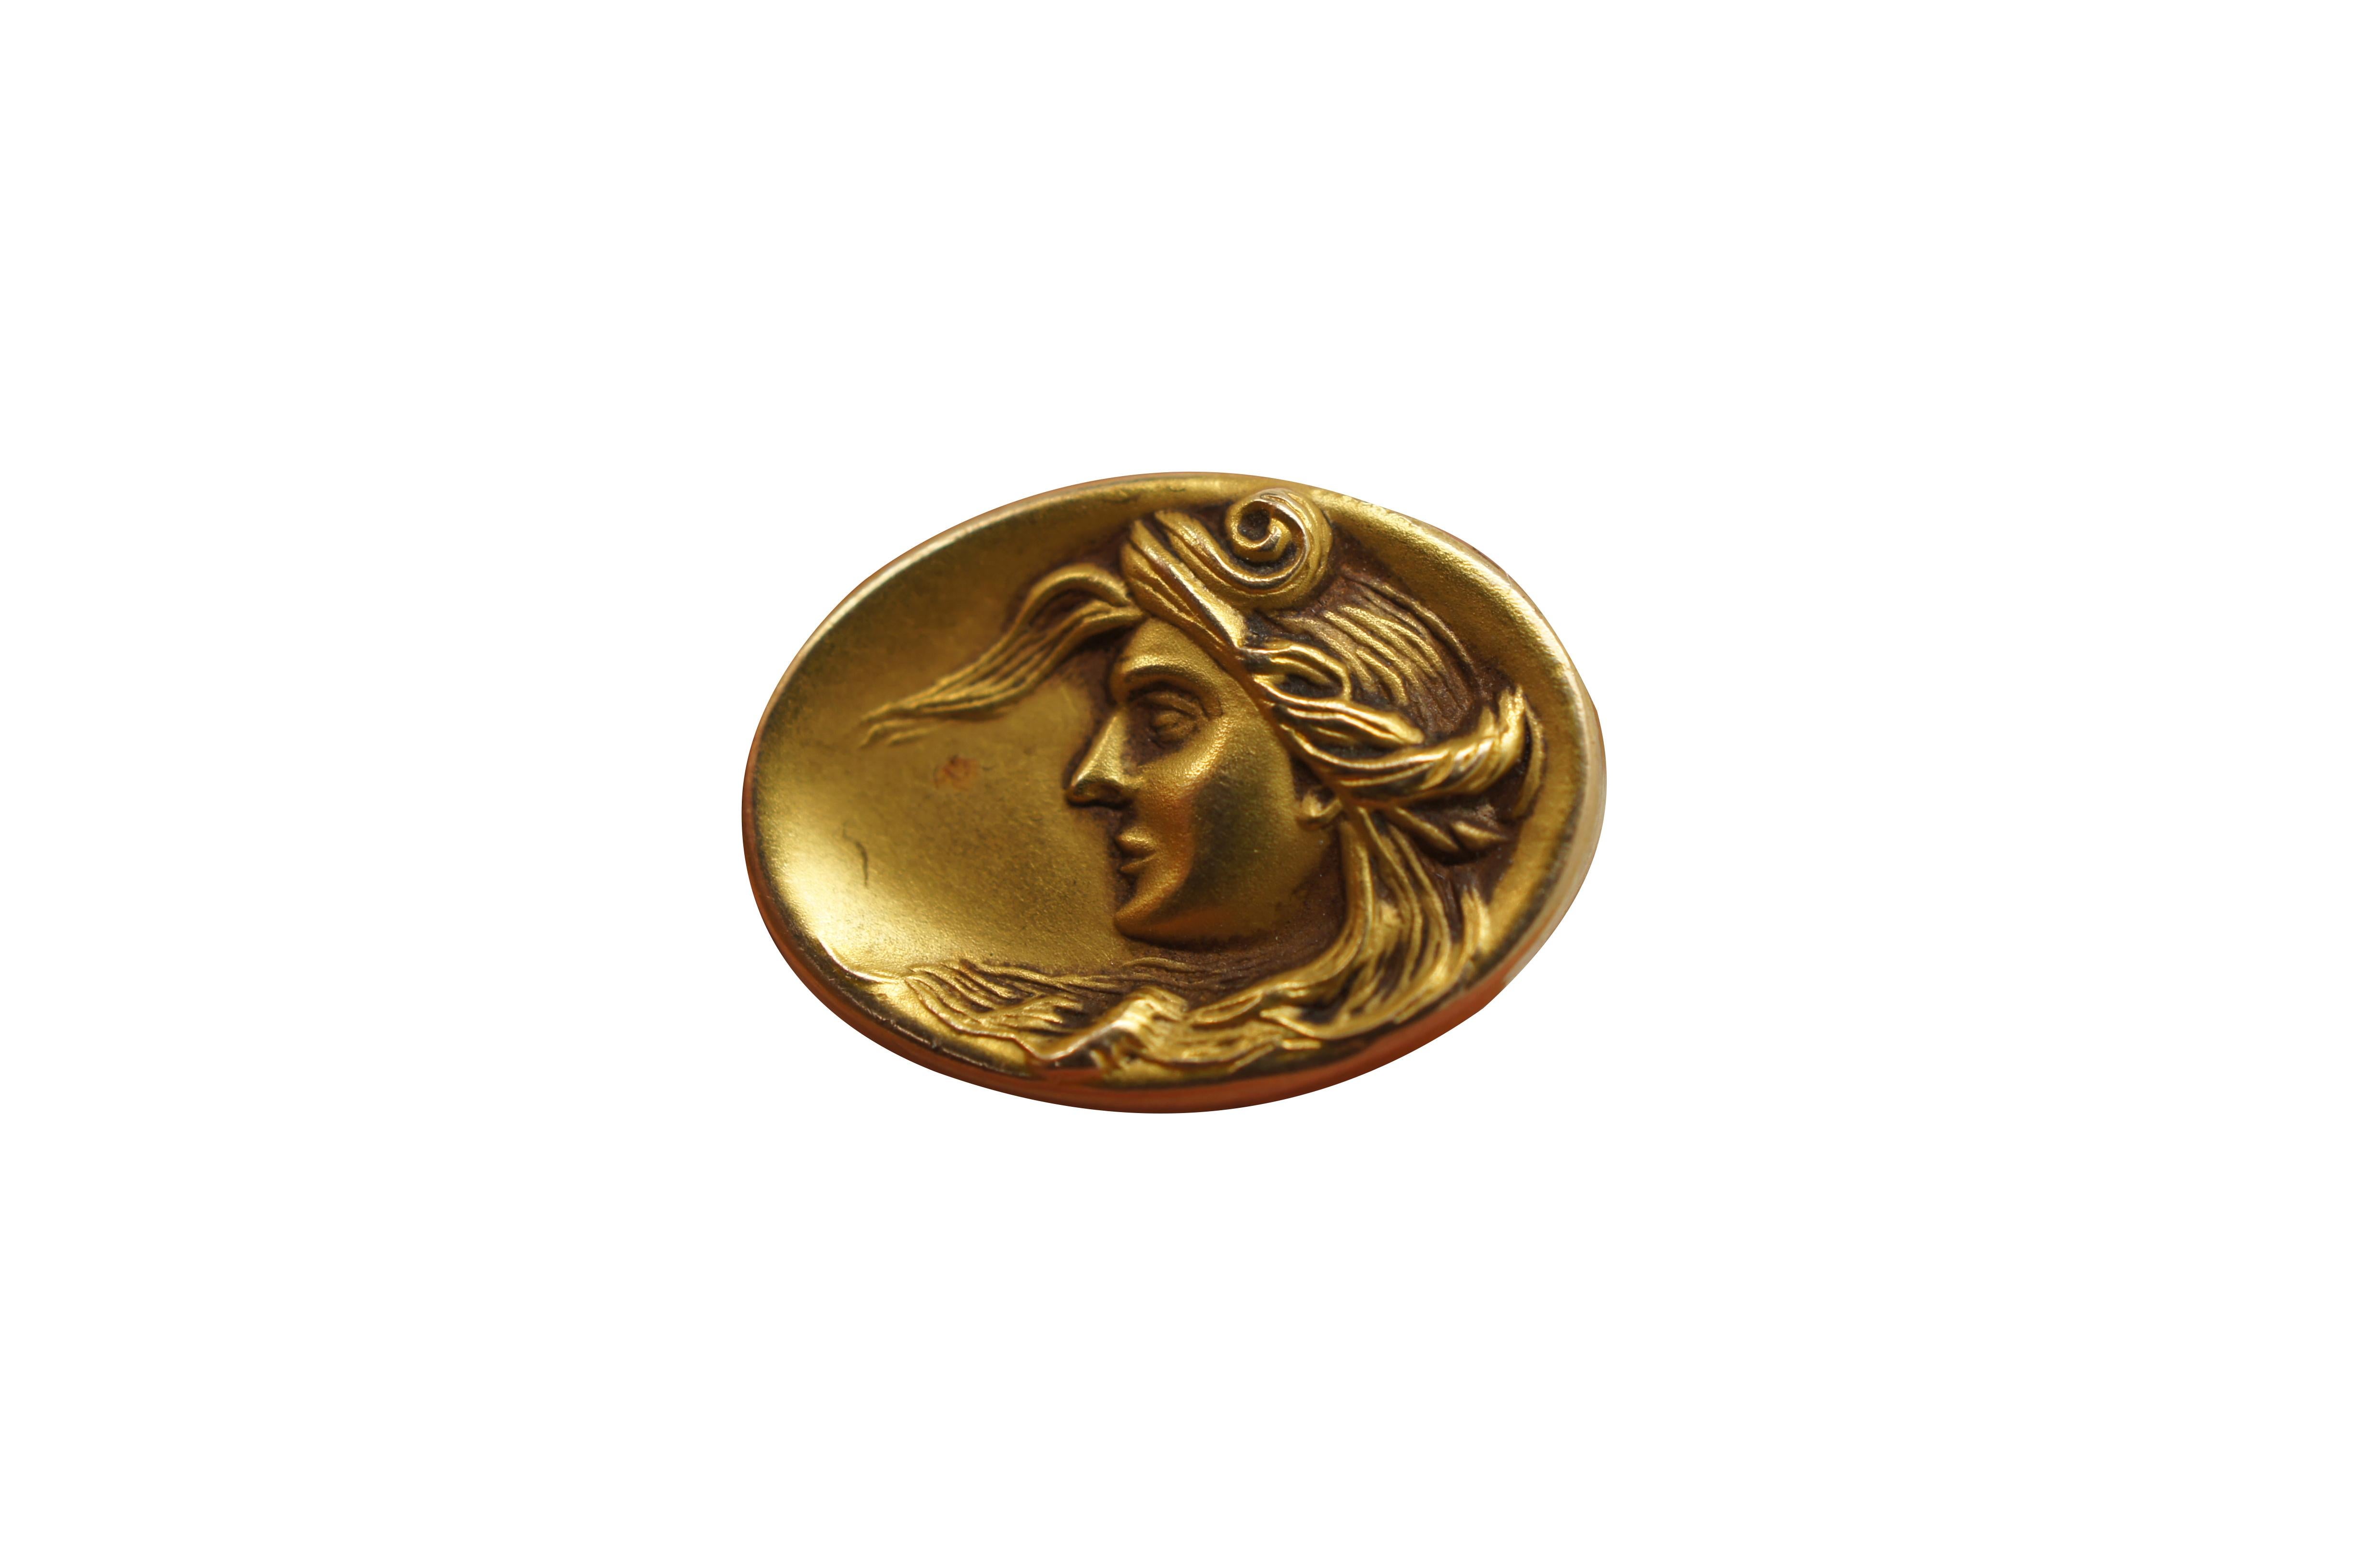 Antike Manschettenknöpfe im Jugendstil aus 10-karätigem Gold in ovaler Form mit weiblicher Silhouette.

Abmessungen: 
0,625